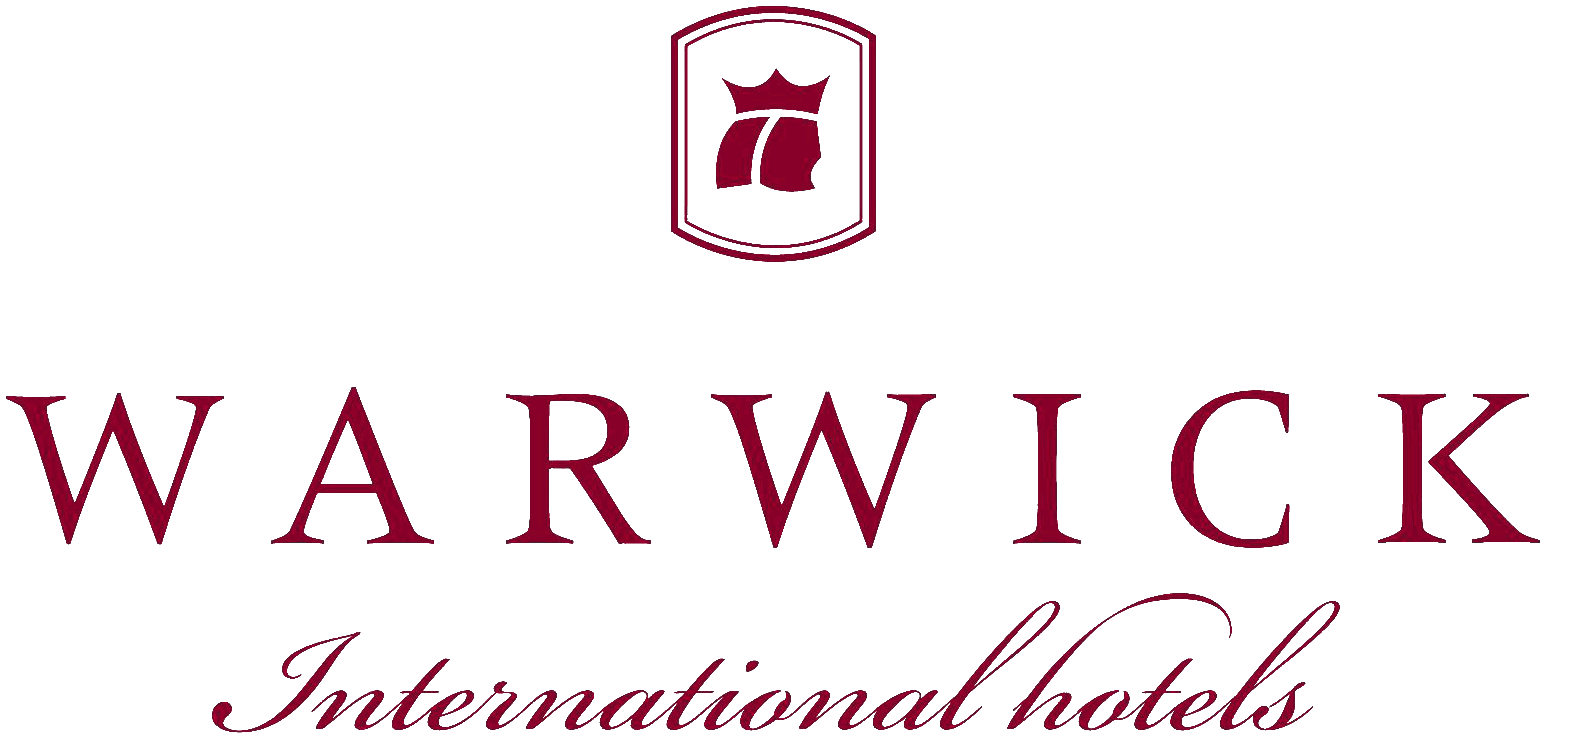 Warwick Logo - Warwick Hotels & Resorts | Logopedia | FANDOM powered by Wikia